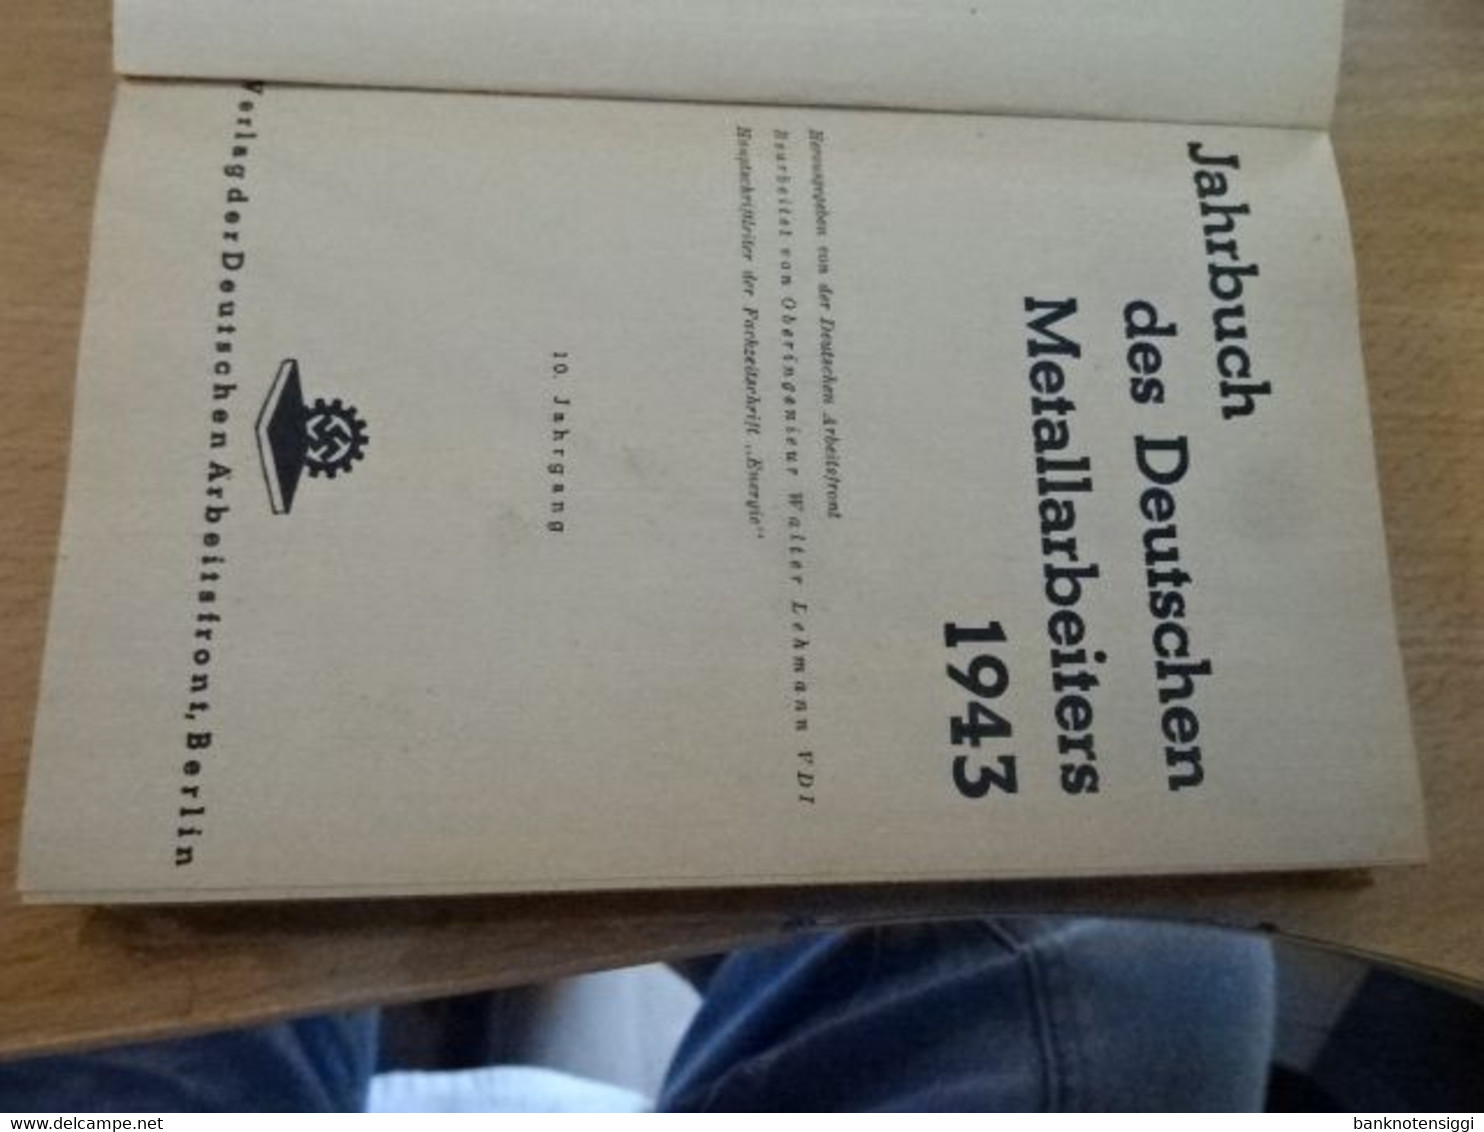 Jahrbuch Des Deutschen Metallarbeiters. 1943 - Technical